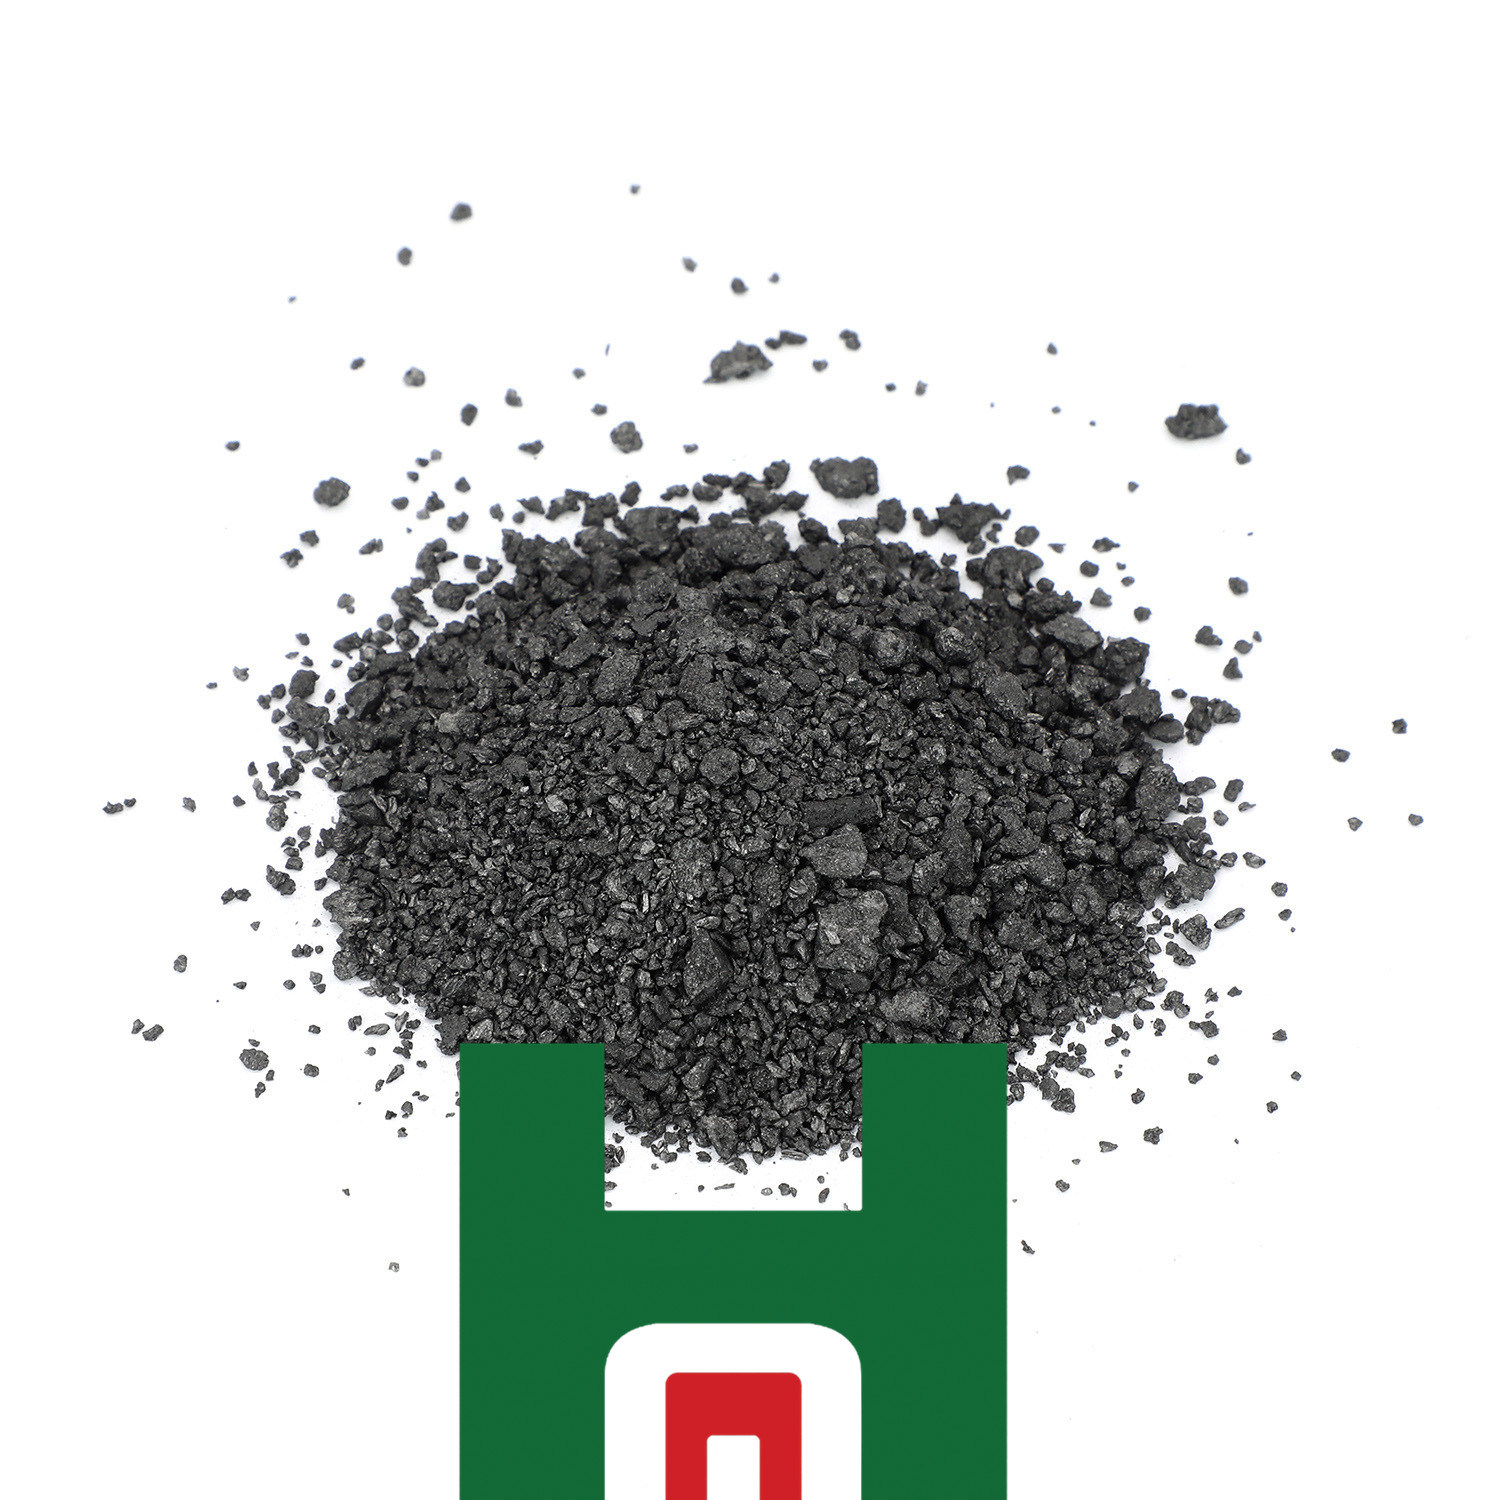 Acheter Carbure de silicium granulaire noir et vert de qualité métallurgique en poudre pour la fonderie,Carbure de silicium granulaire noir et vert de qualité métallurgique en poudre pour la fonderie Prix,Carbure de silicium granulaire noir et vert de qualité métallurgique en poudre pour la fonderie Marques,Carbure de silicium granulaire noir et vert de qualité métallurgique en poudre pour la fonderie Fabricant,Carbure de silicium granulaire noir et vert de qualité métallurgique en poudre pour la fonderie Quotes,Carbure de silicium granulaire noir et vert de qualité métallurgique en poudre pour la fonderie Société,